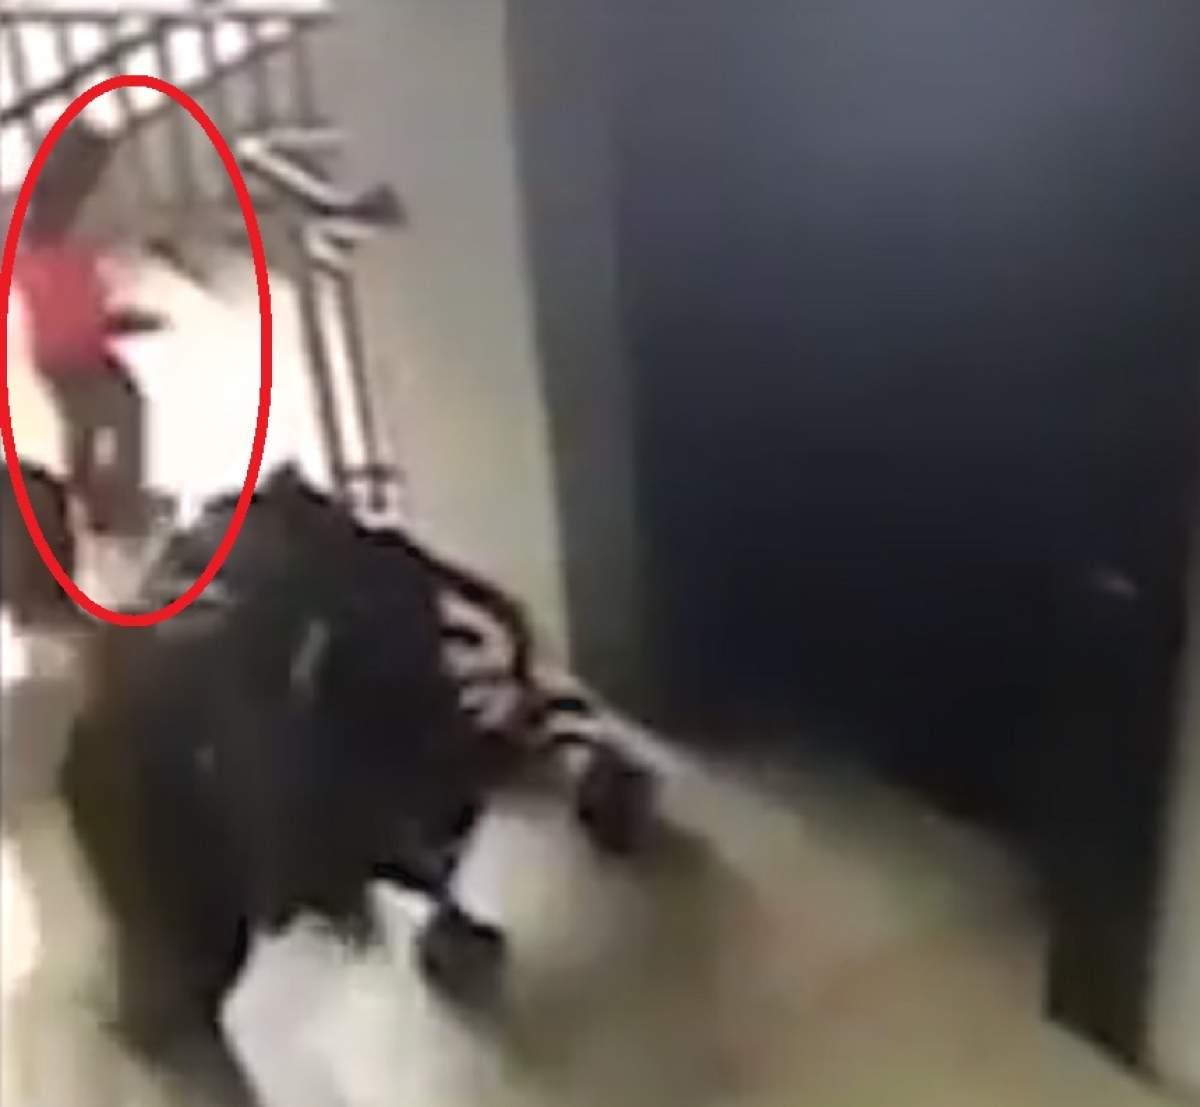 VIDEO / O fetiţă de 2 ani a ajuns în stare gravă în timp ce mama ei folosea telefonul! Copila a căzut şi s-a rănit la cap